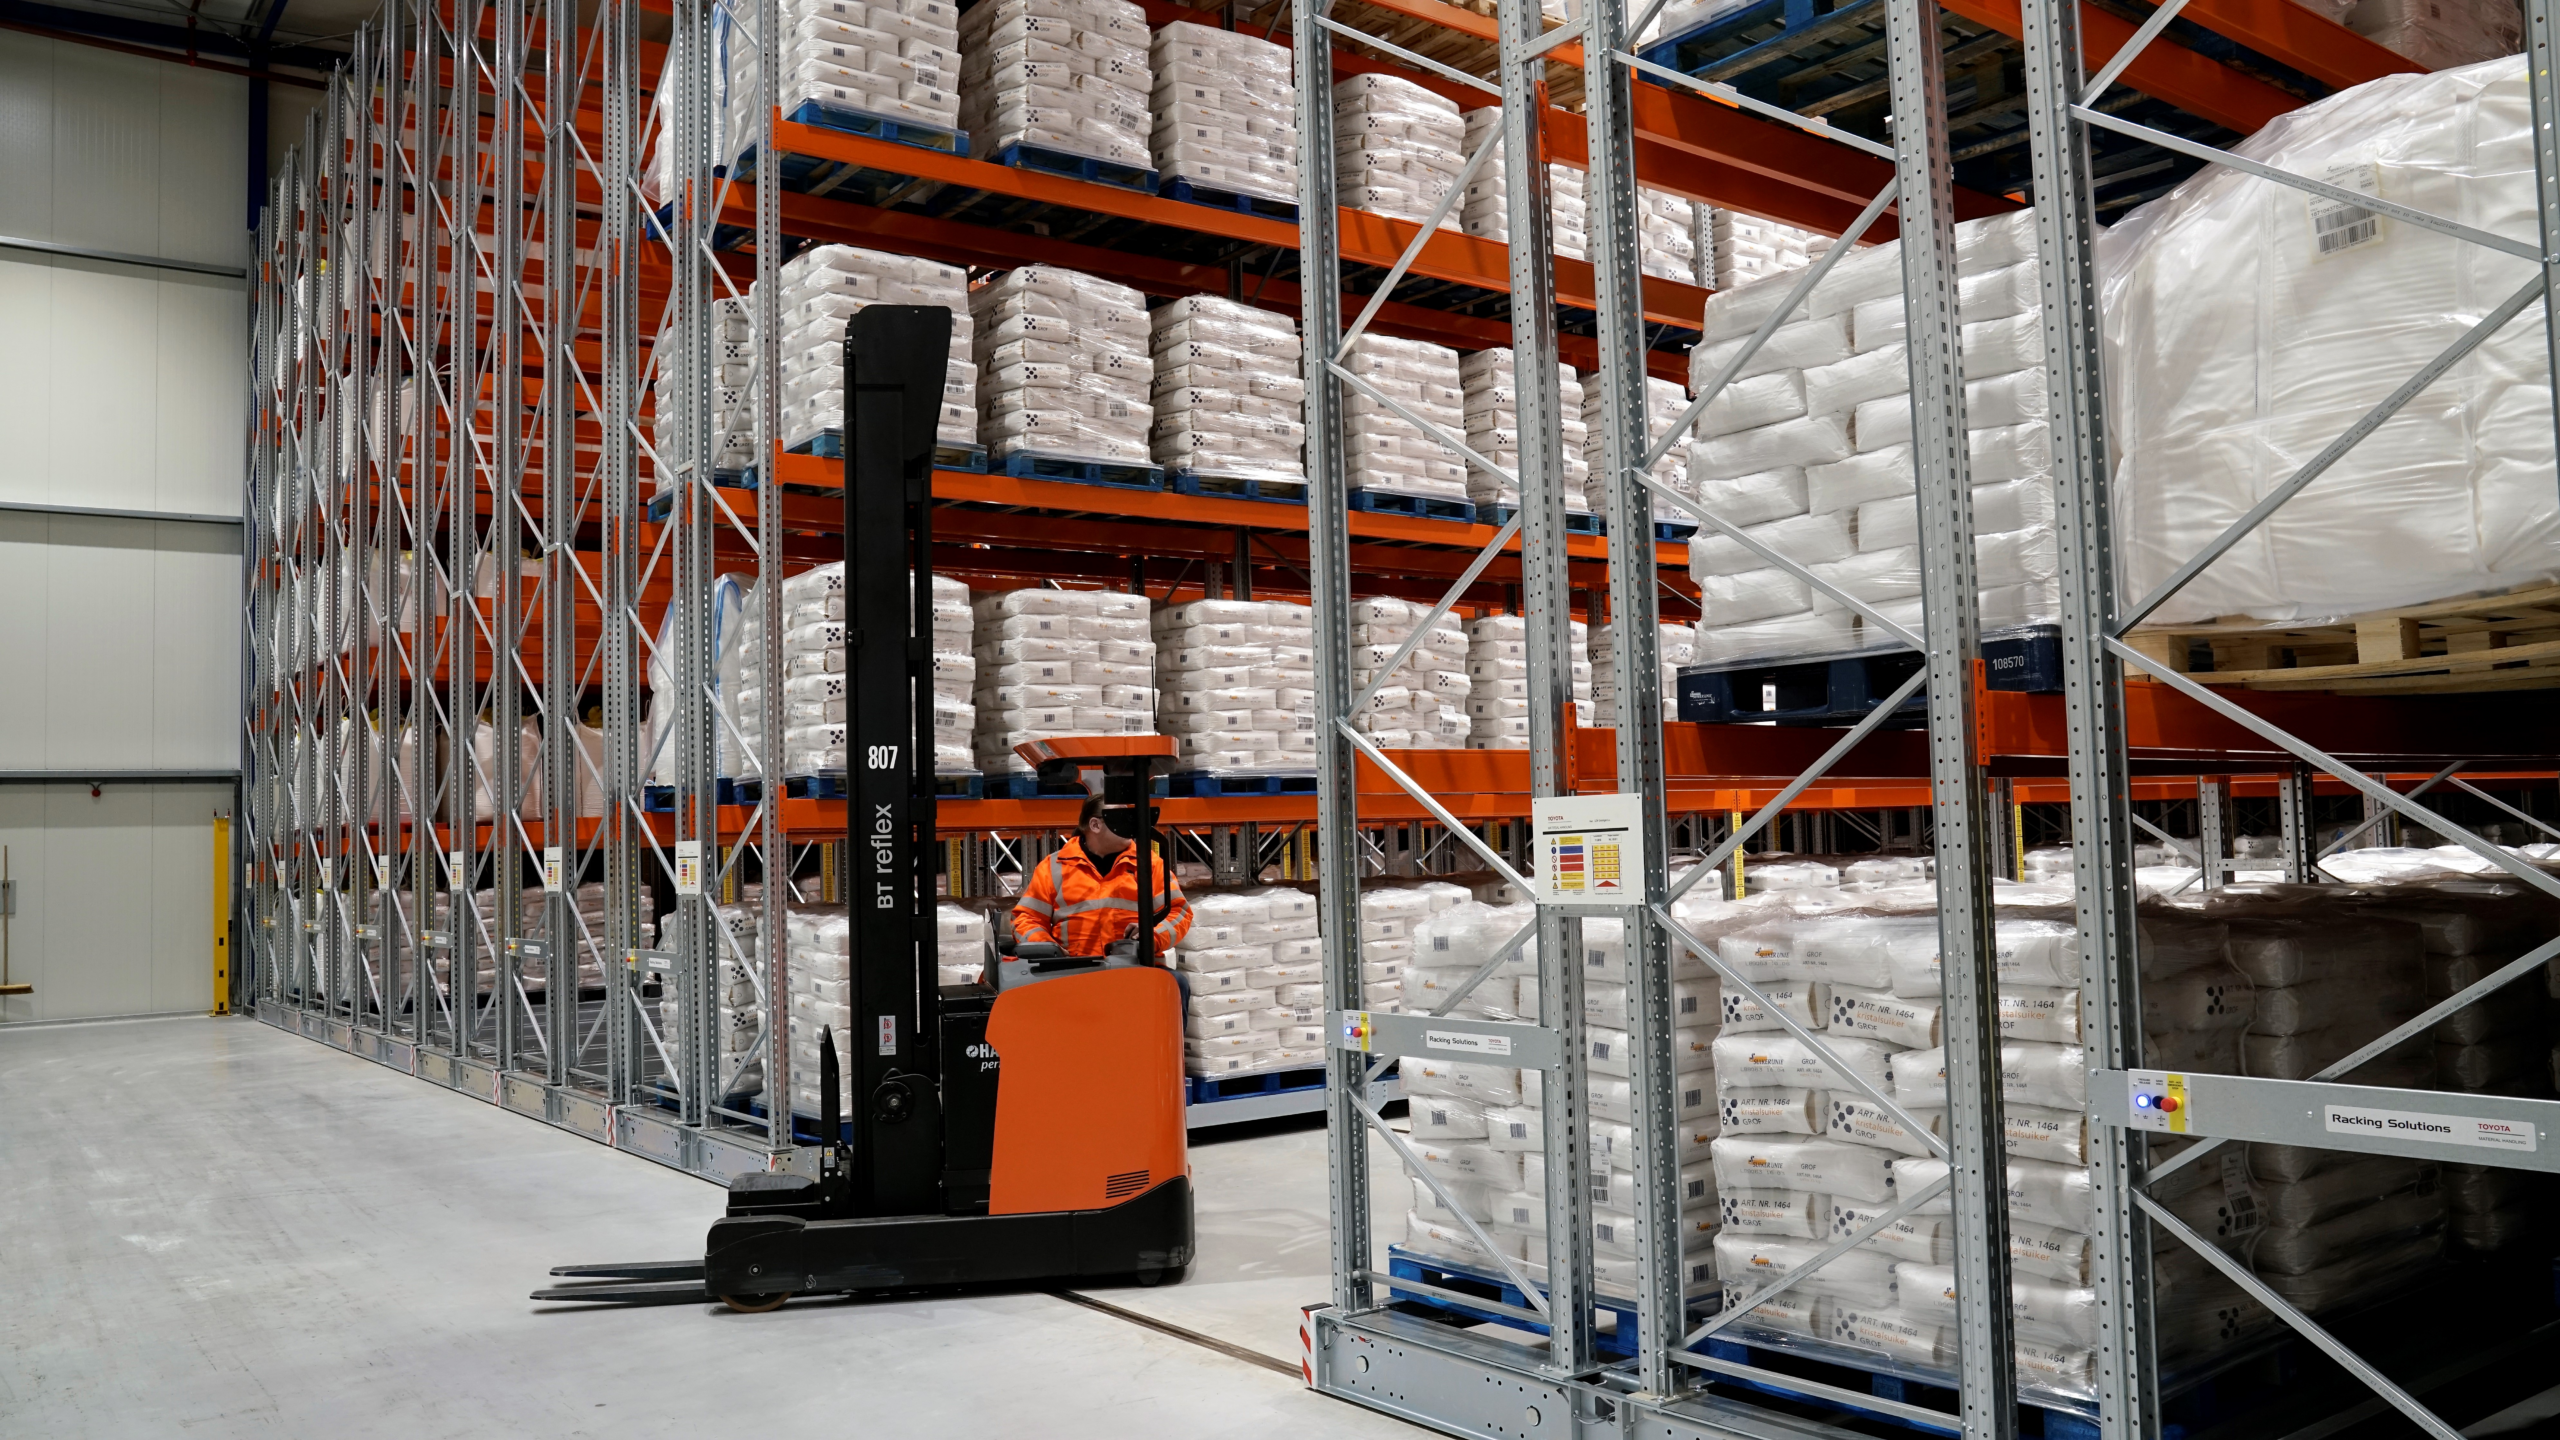 Mezzi di movimentazione magazzino: come ottimizzare efficienza e sicurezza